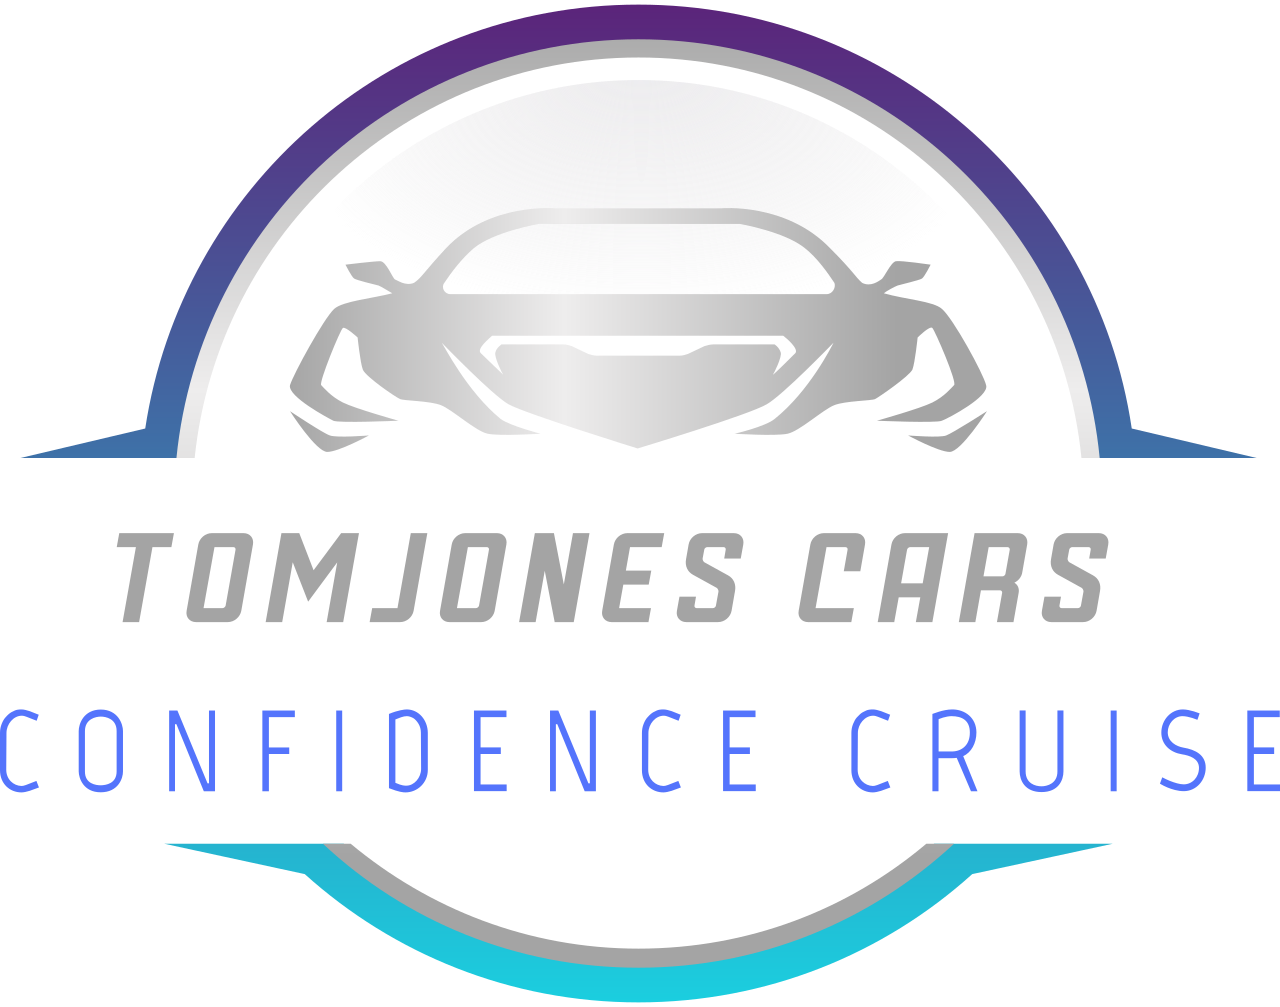 TomJones cars's logo